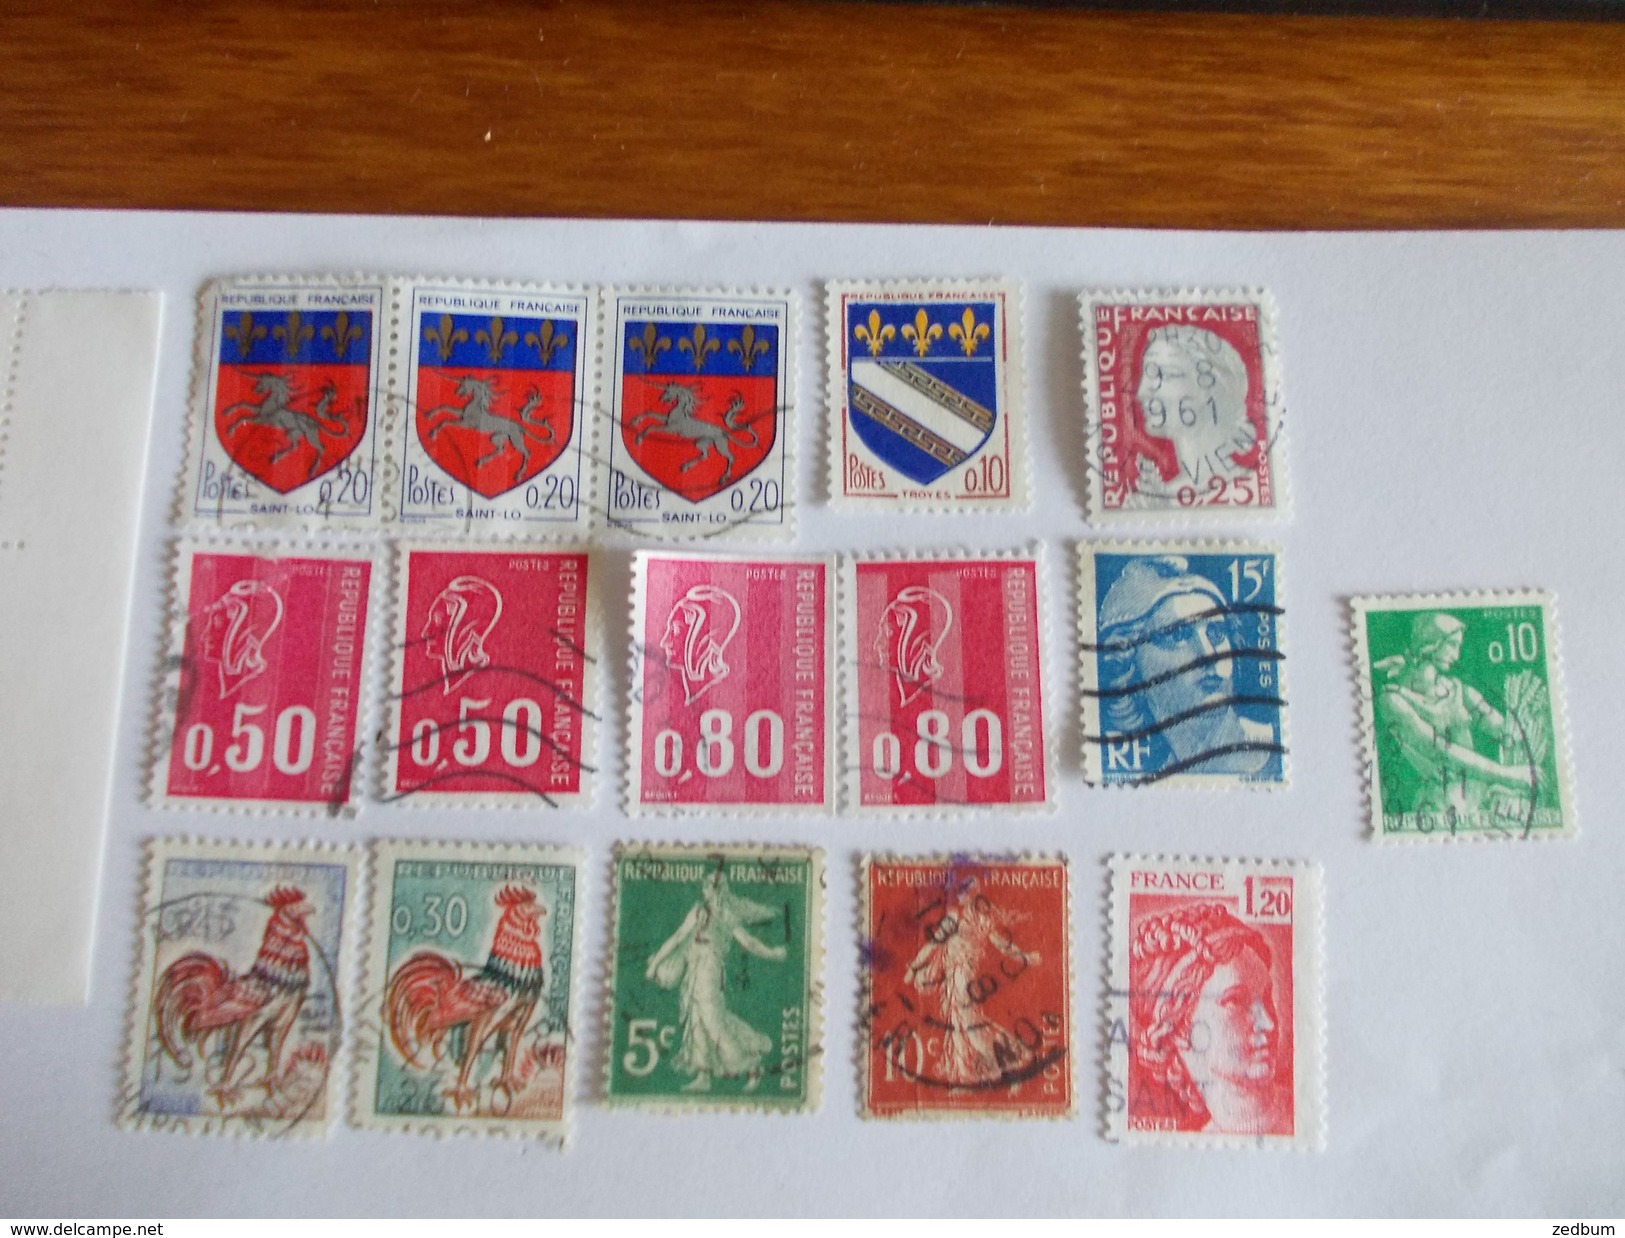 TIMBRE France Lot De Timbres à Identifier Dont Des Neufs N° 634 - Lots & Kiloware (mixtures) - Max. 999 Stamps